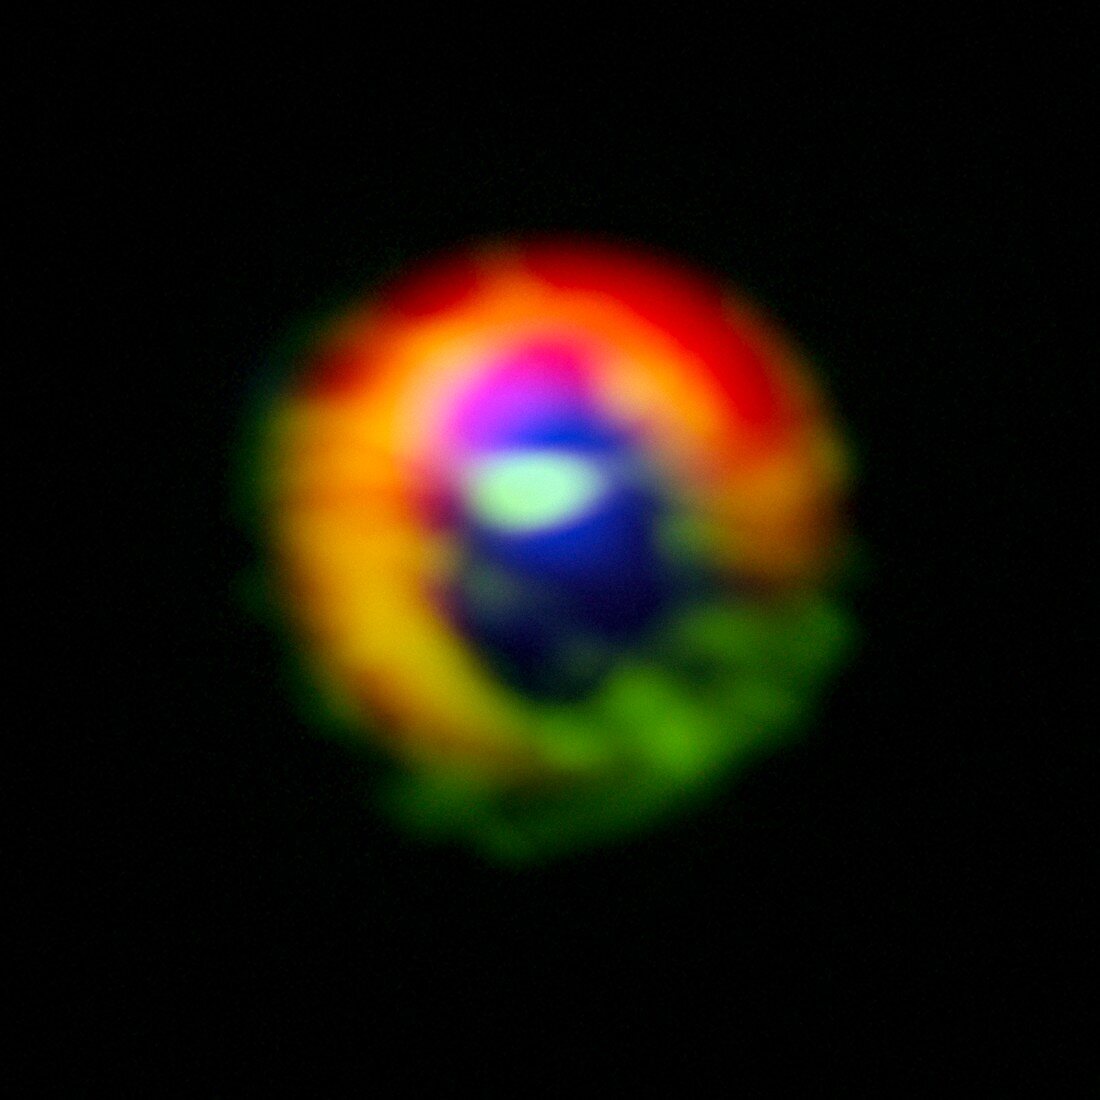 HD 142527 star,ALMA image